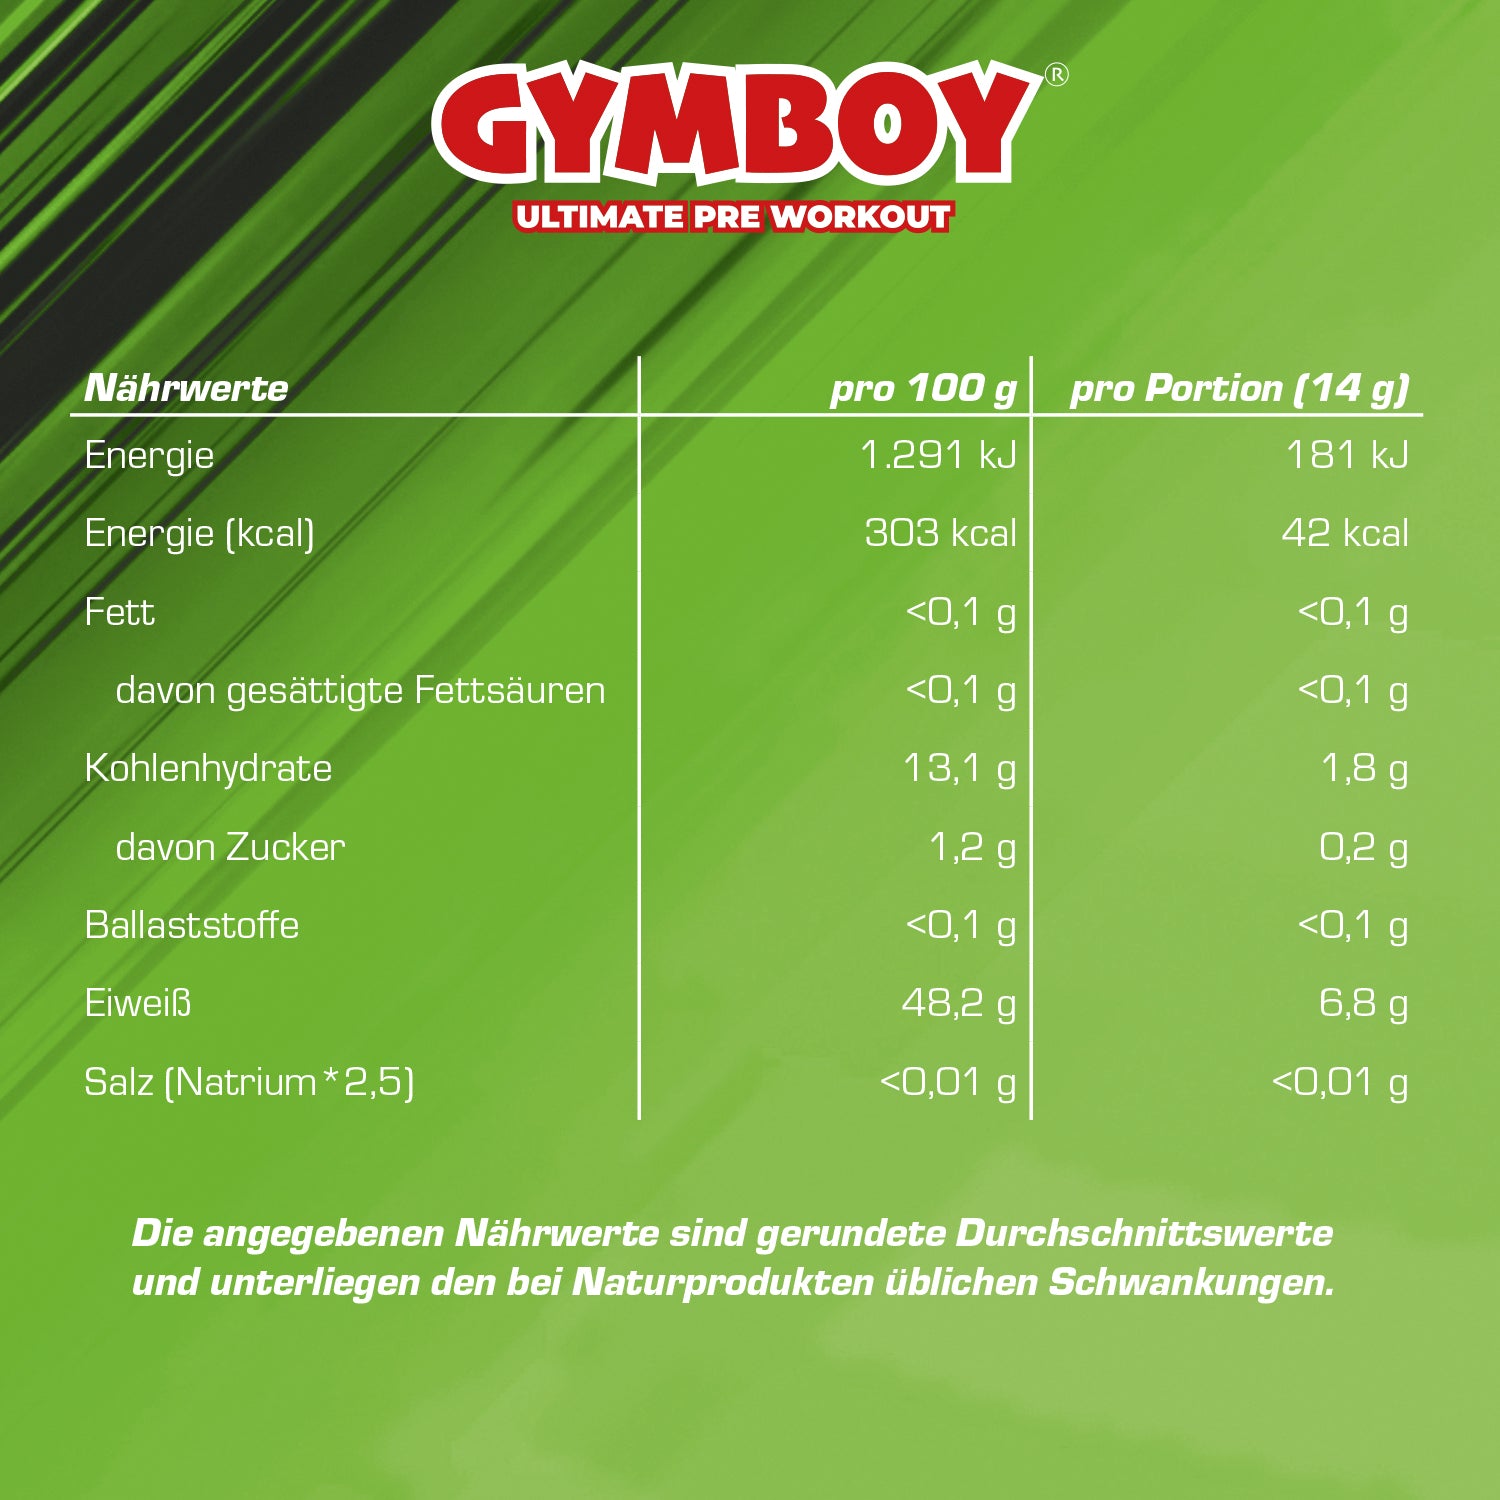 GYMBOY® – Pre Workout Martial Melon Edition 392 g